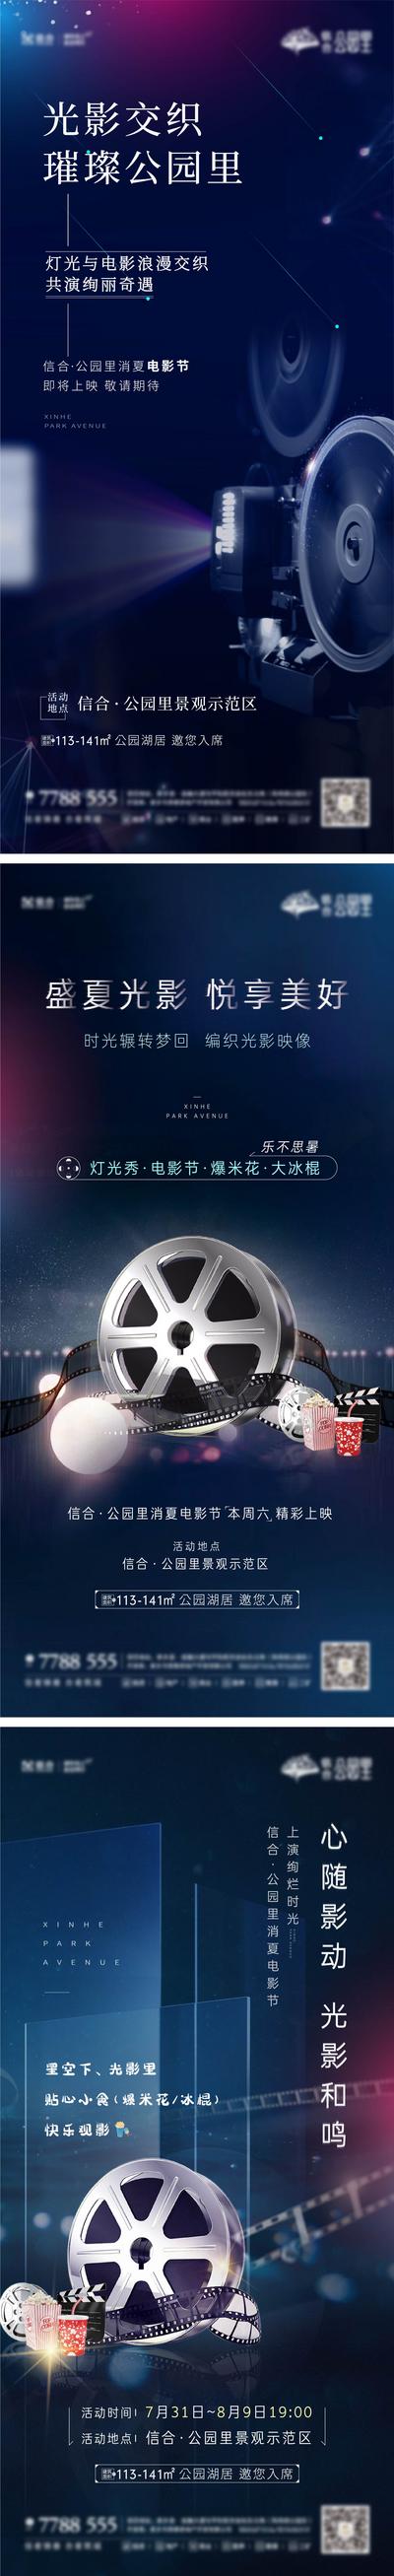 南门网 海报 地产 电影节 大气 胶卷 放映机